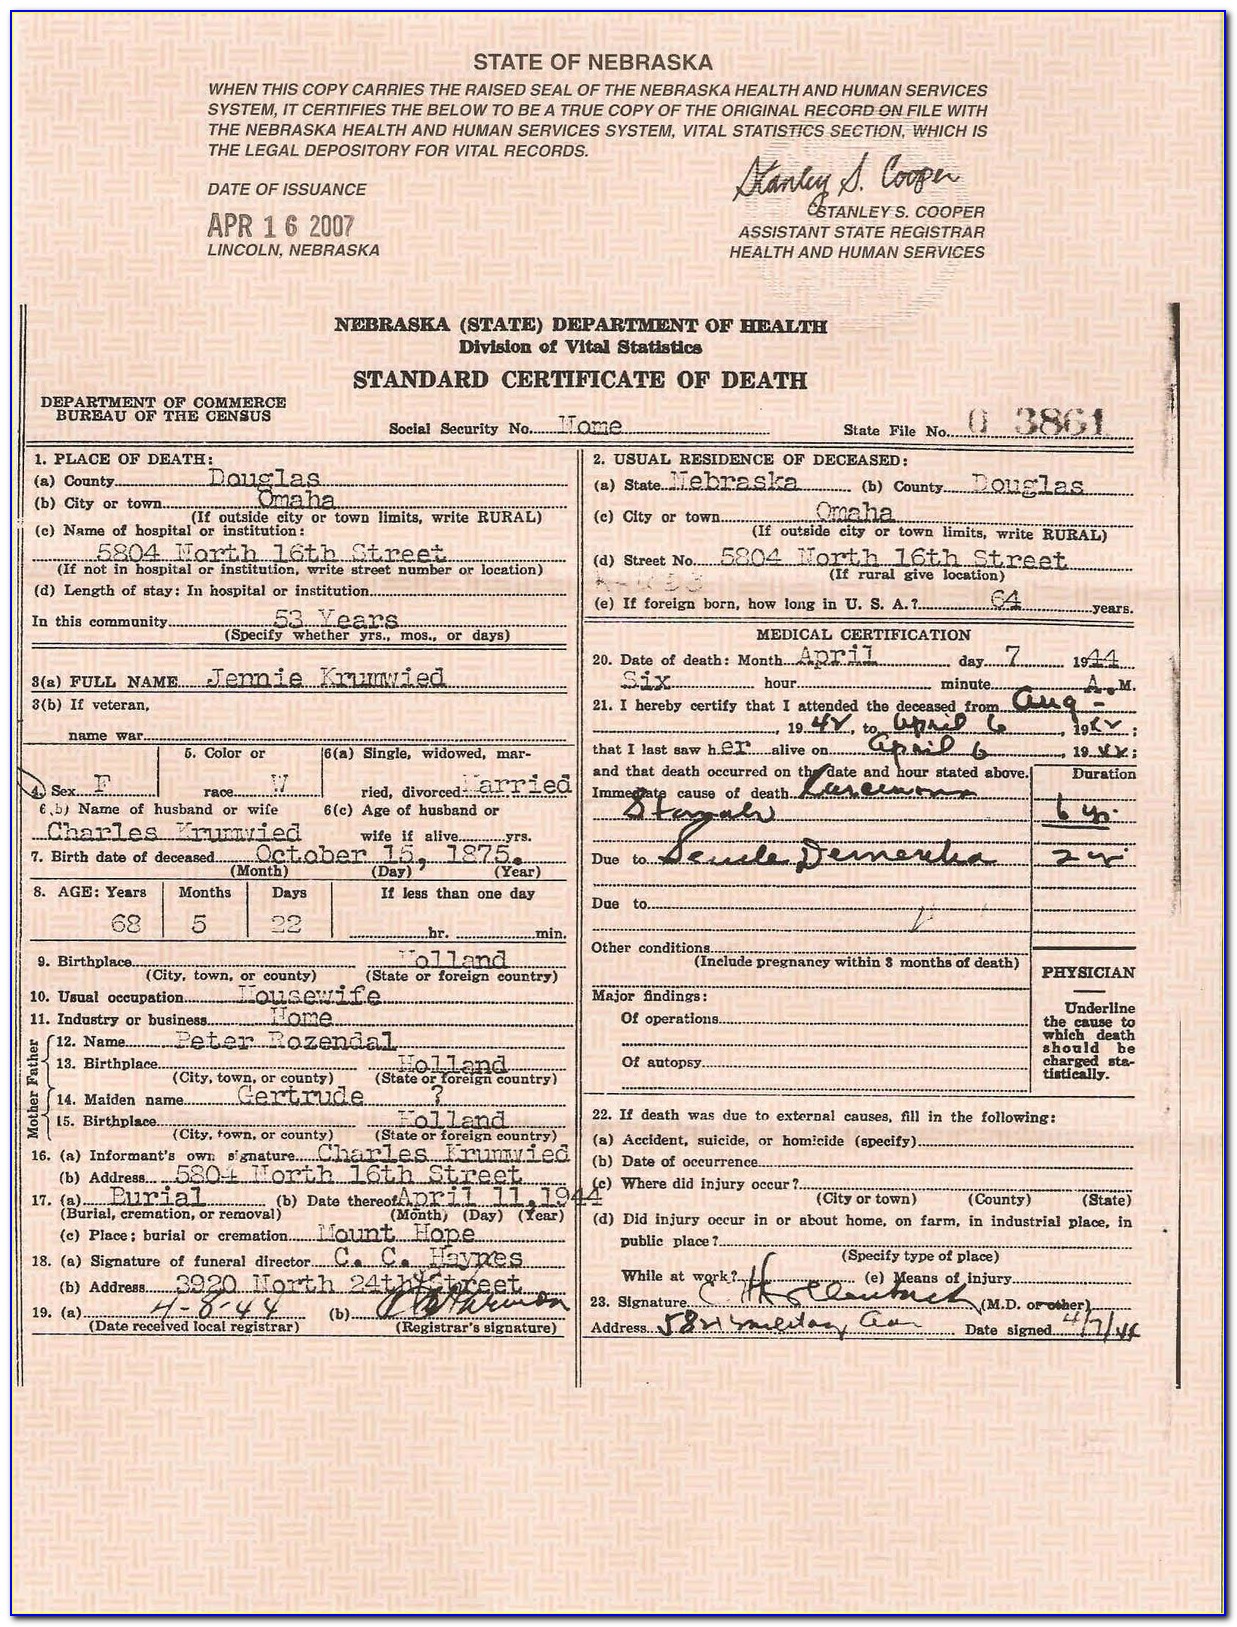 Douglas County Ne Birth Certificate